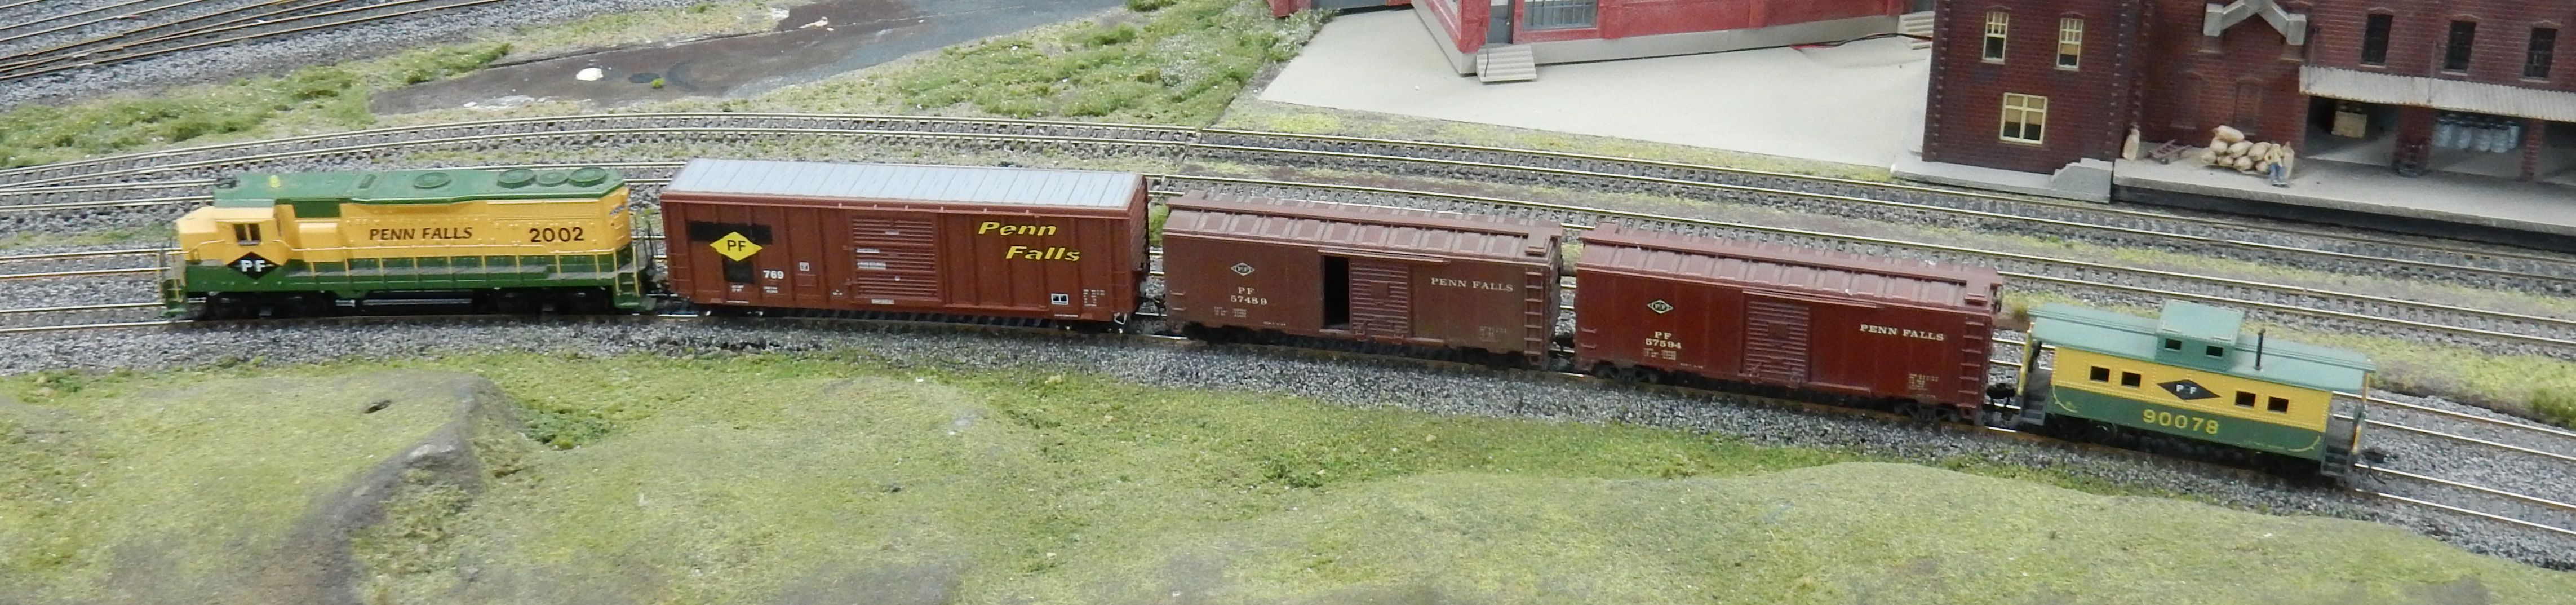 Repainted Penn Falls rolling stock